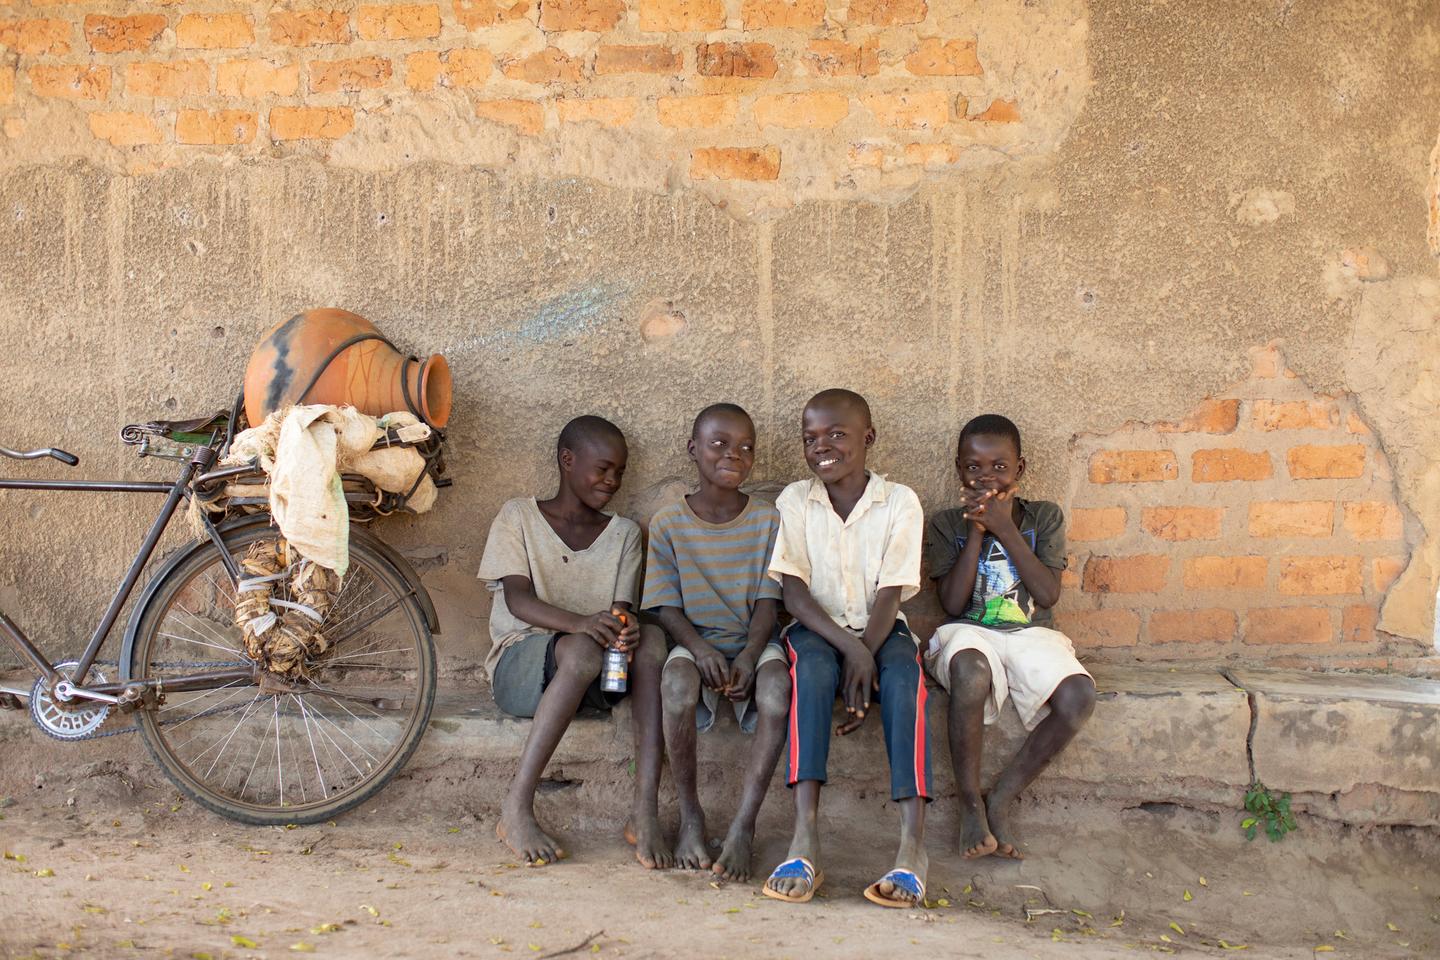 Children in uganda